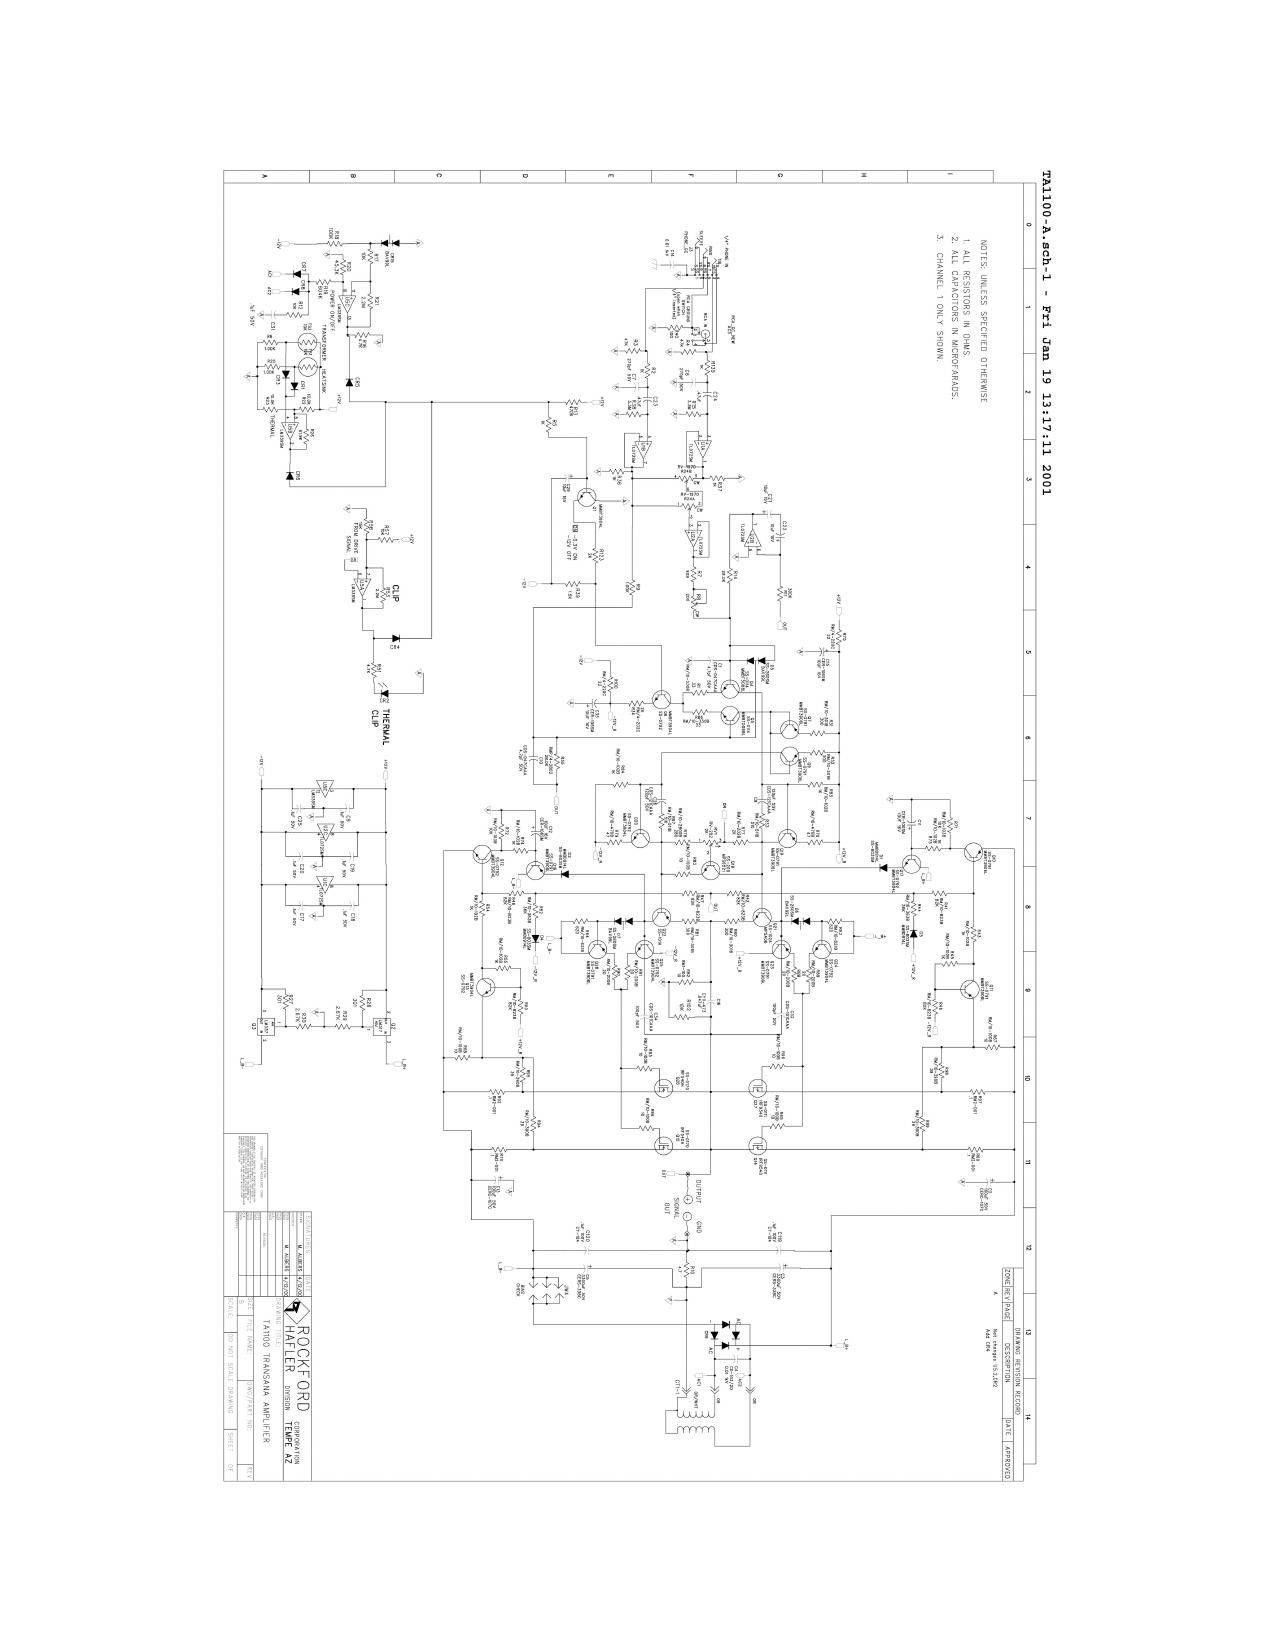 Hafler TA1100 schematic